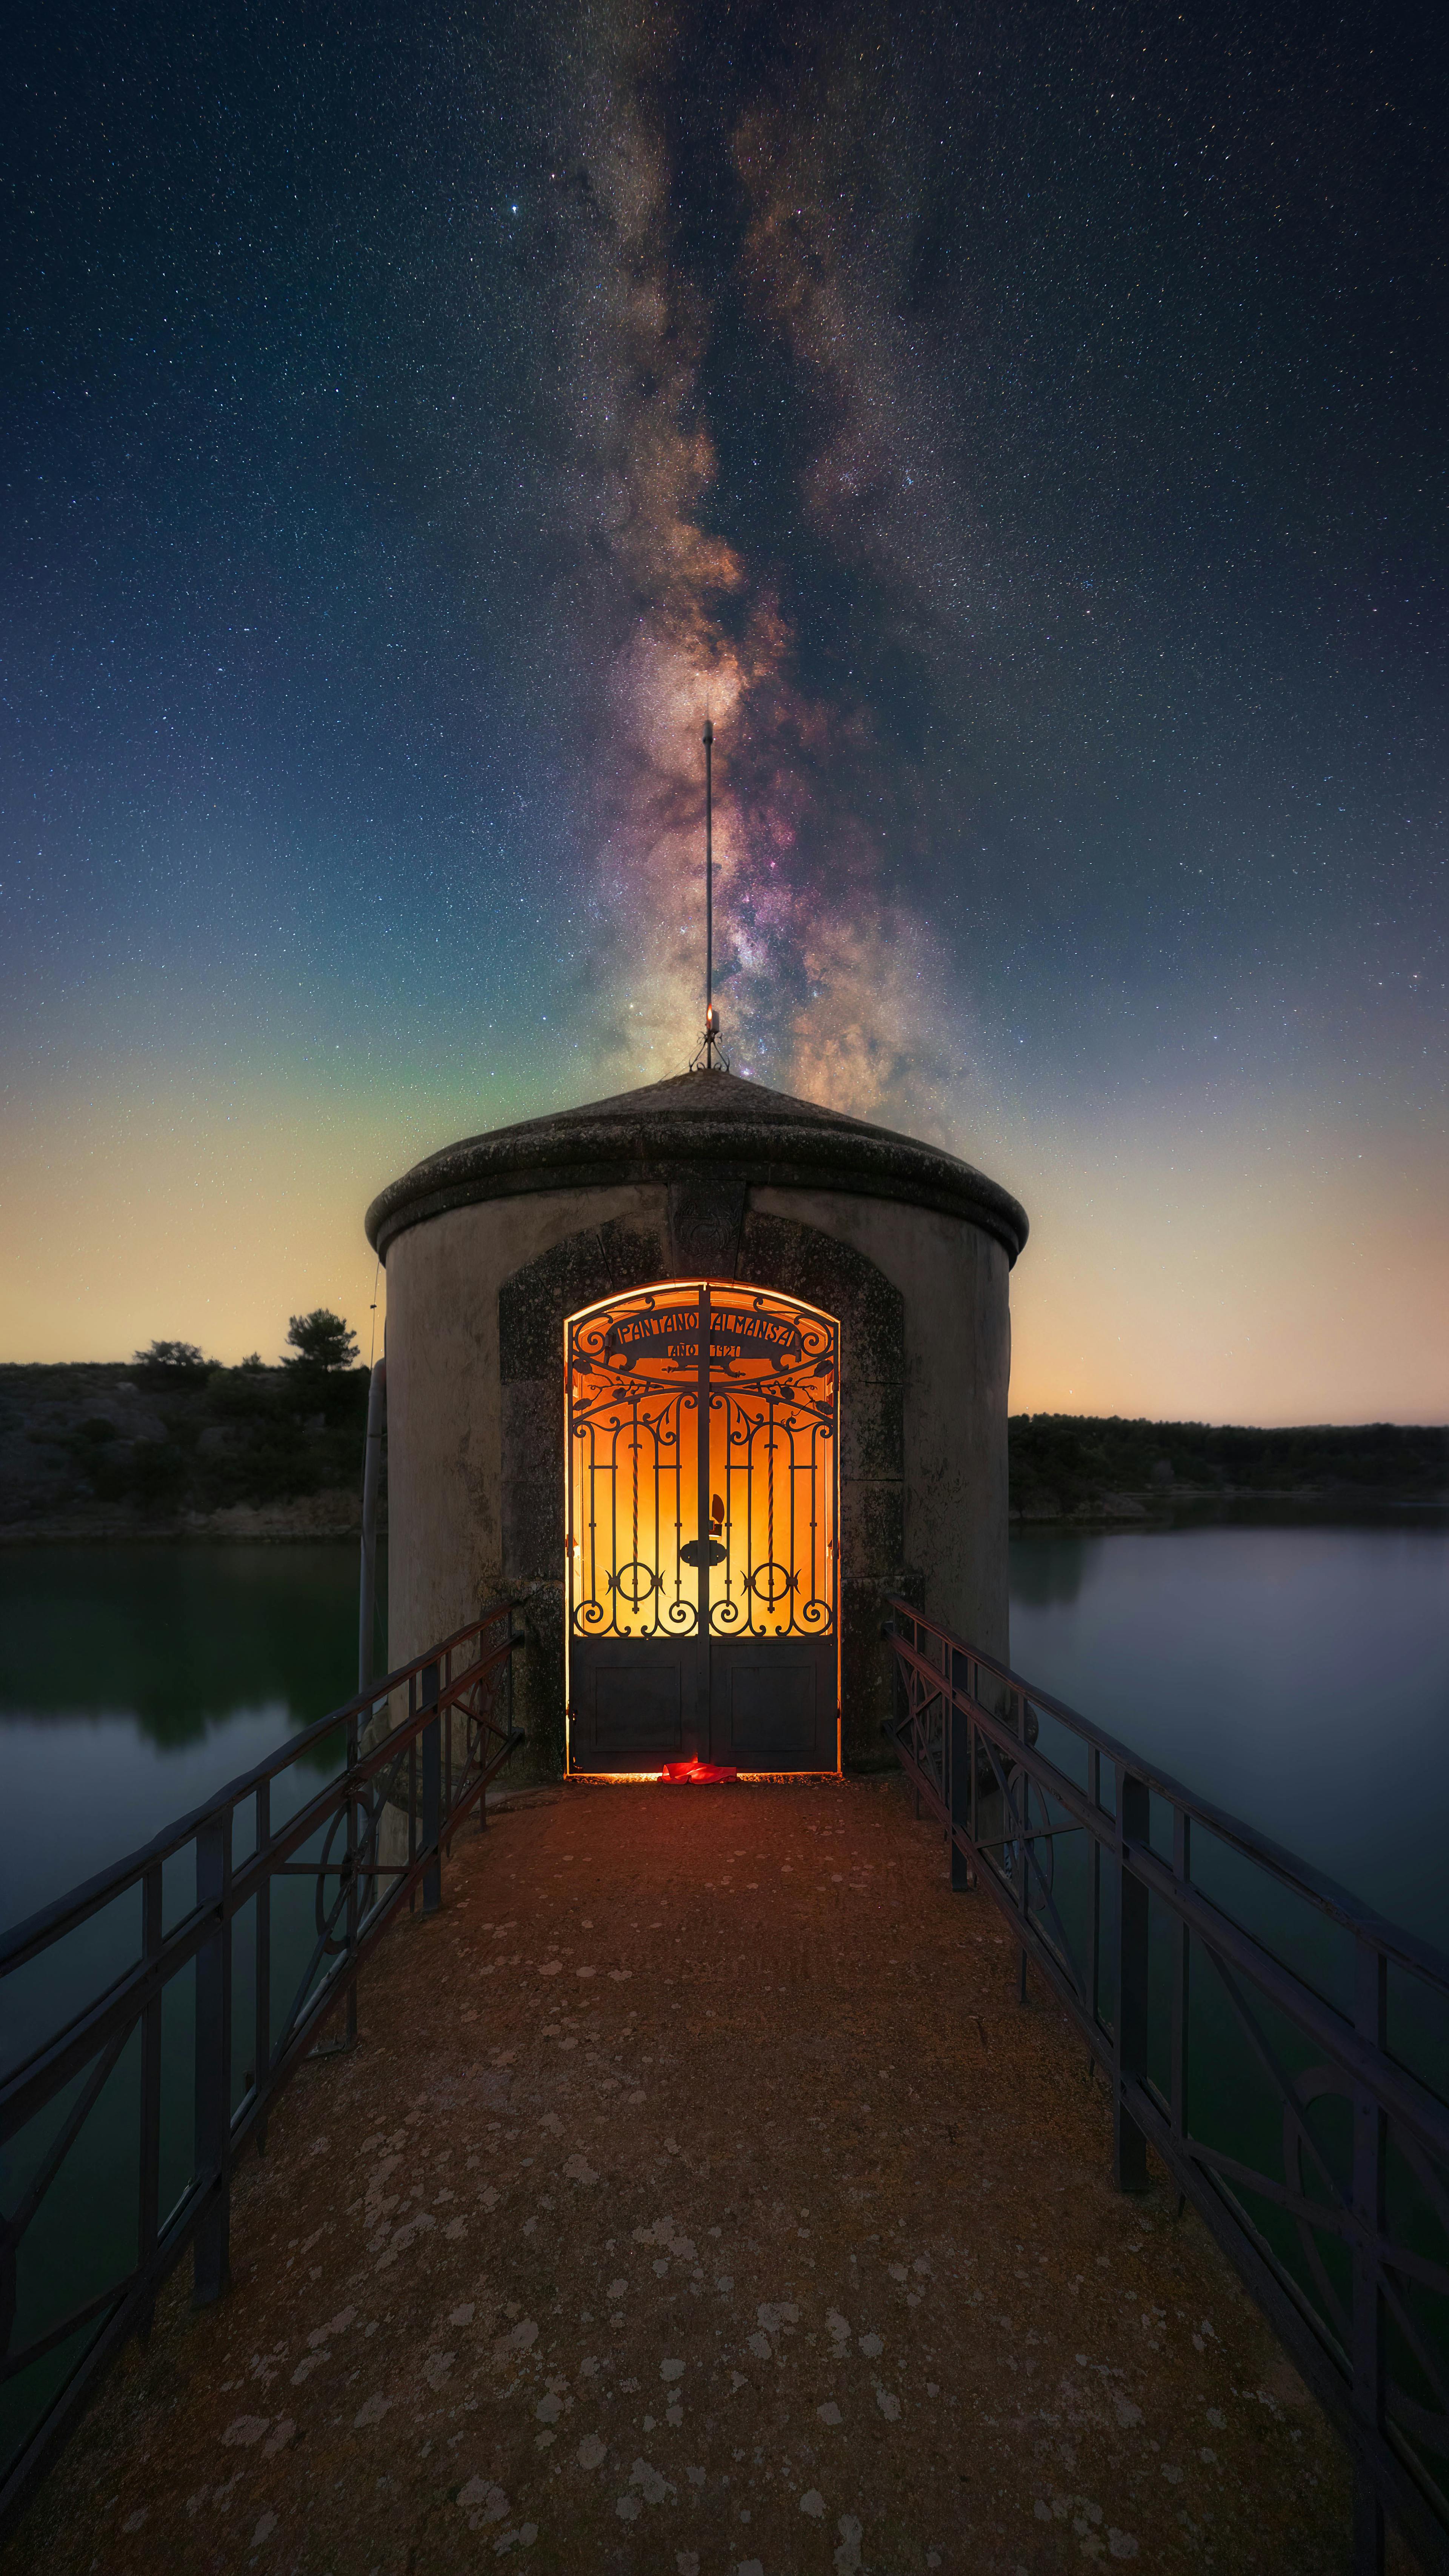 Door to the Stars